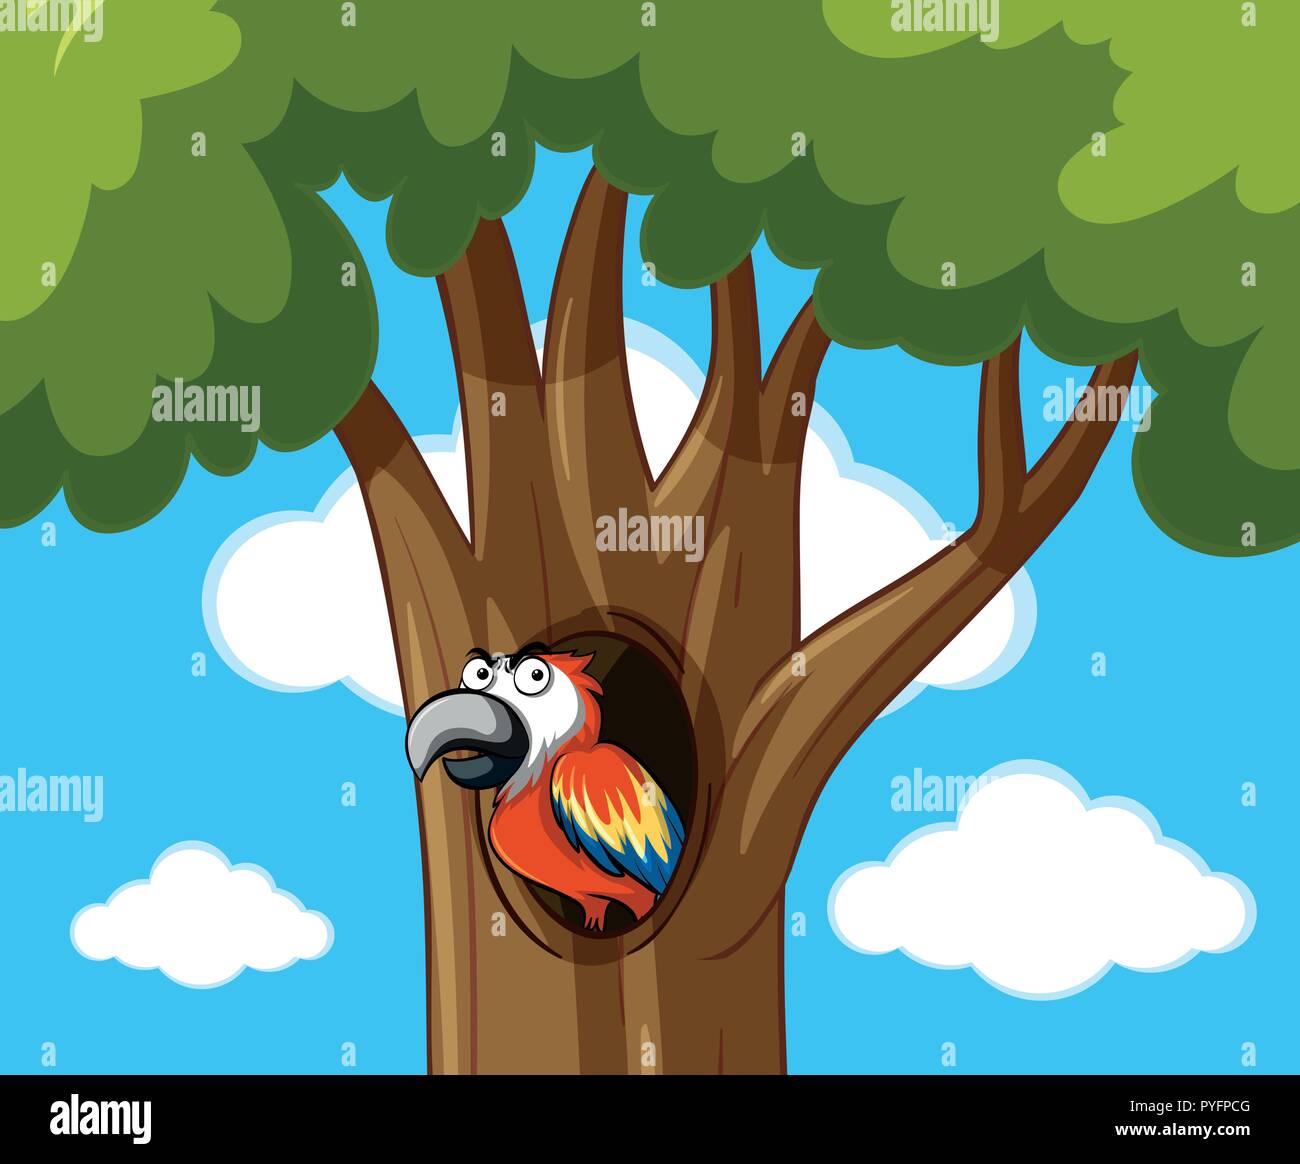 Parrot bird en la ilustración del árbol hueco Ilustración del Vector